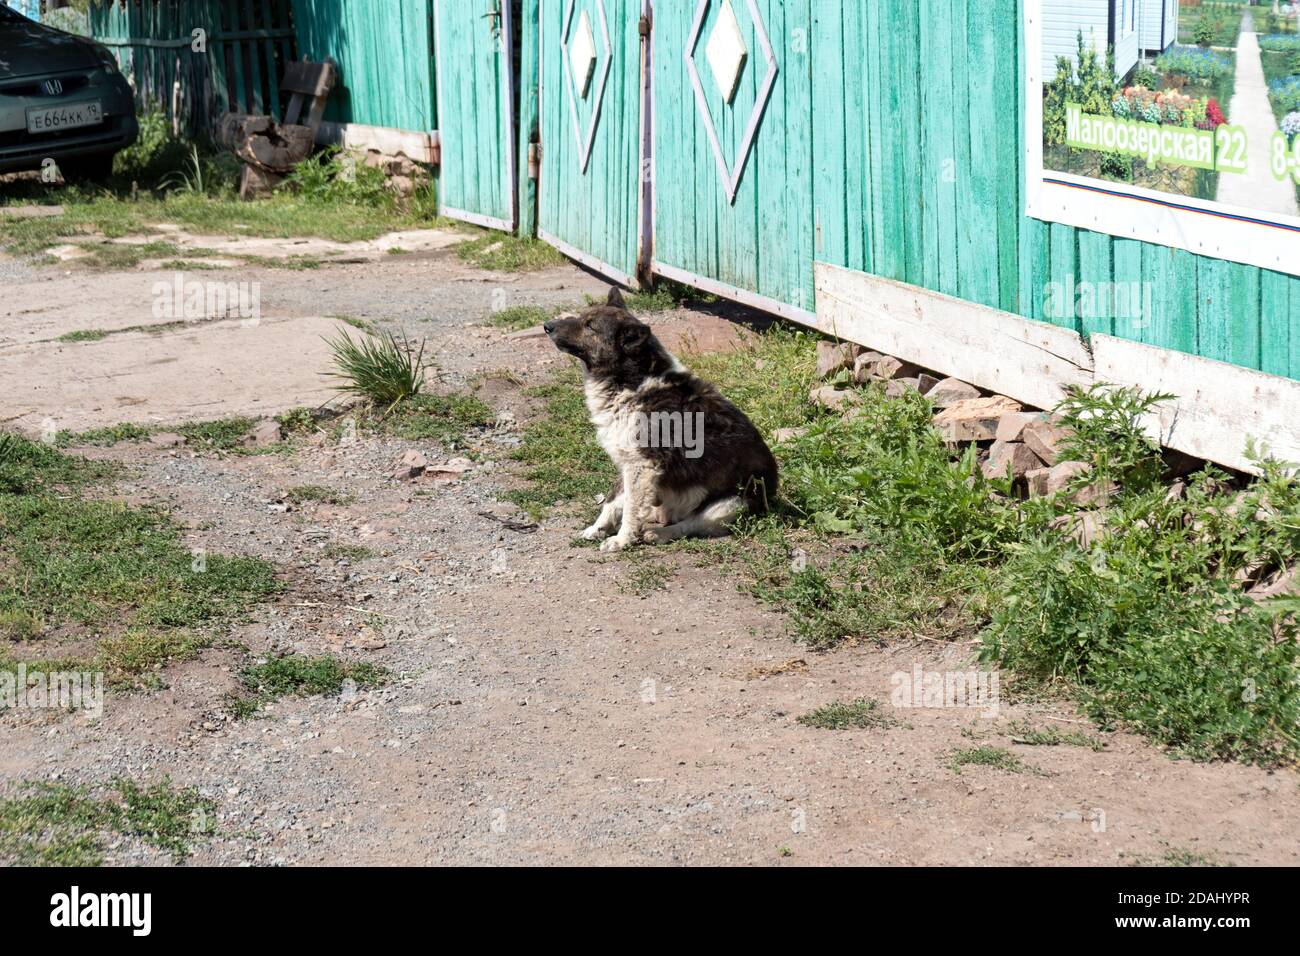 Un petit chien noir et blanc se trouve devant une porte en bois sur une rue du village, par une belle journée d'été. Banque D'Images